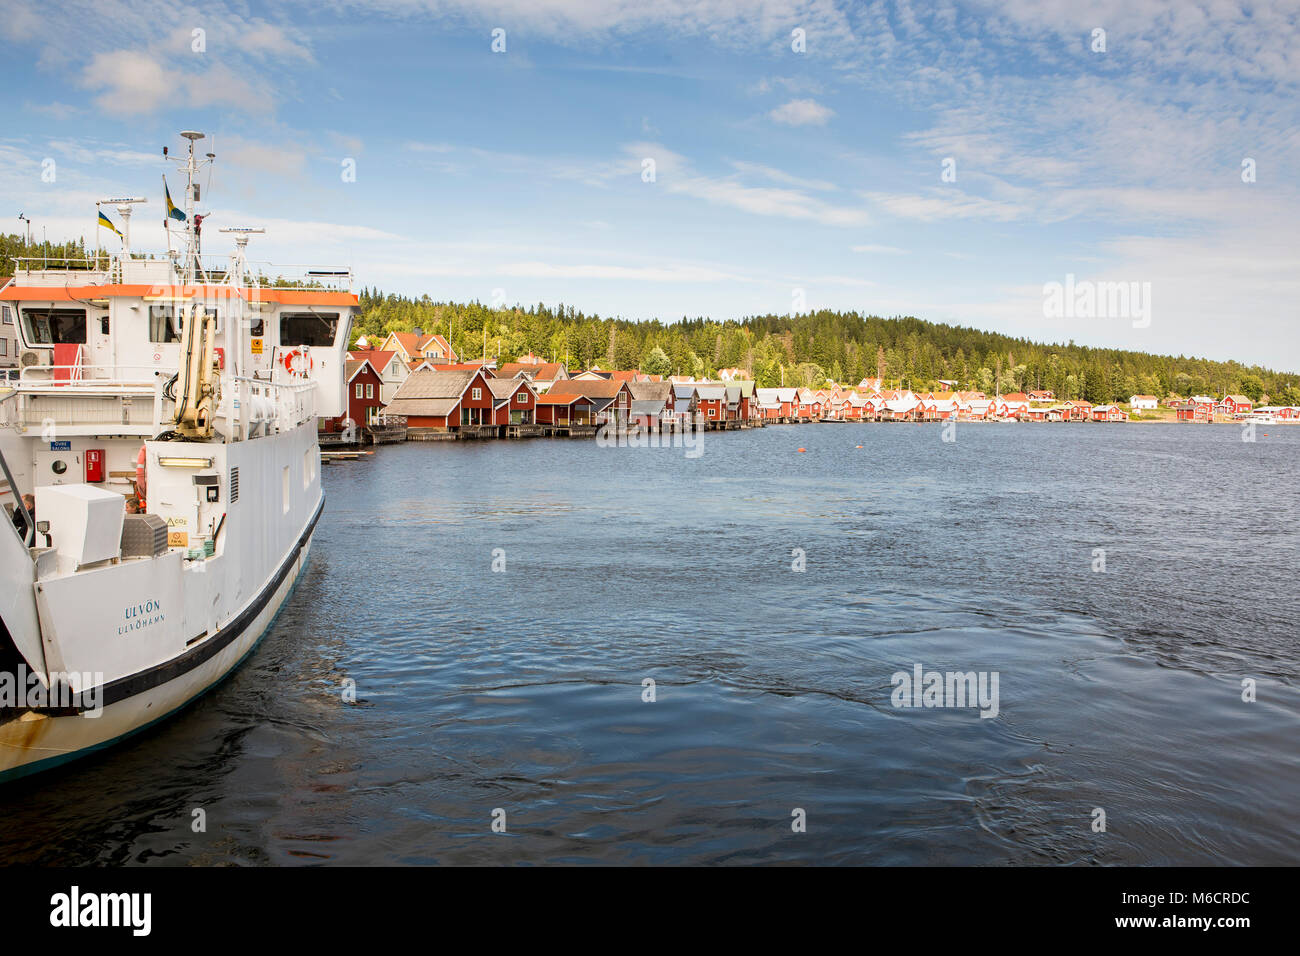 Il porto di Ulvon, Svezia, dove piccoli, rosso case di legno sono costruite in corrispondenza della linea di galleggiamento. Foto Stock